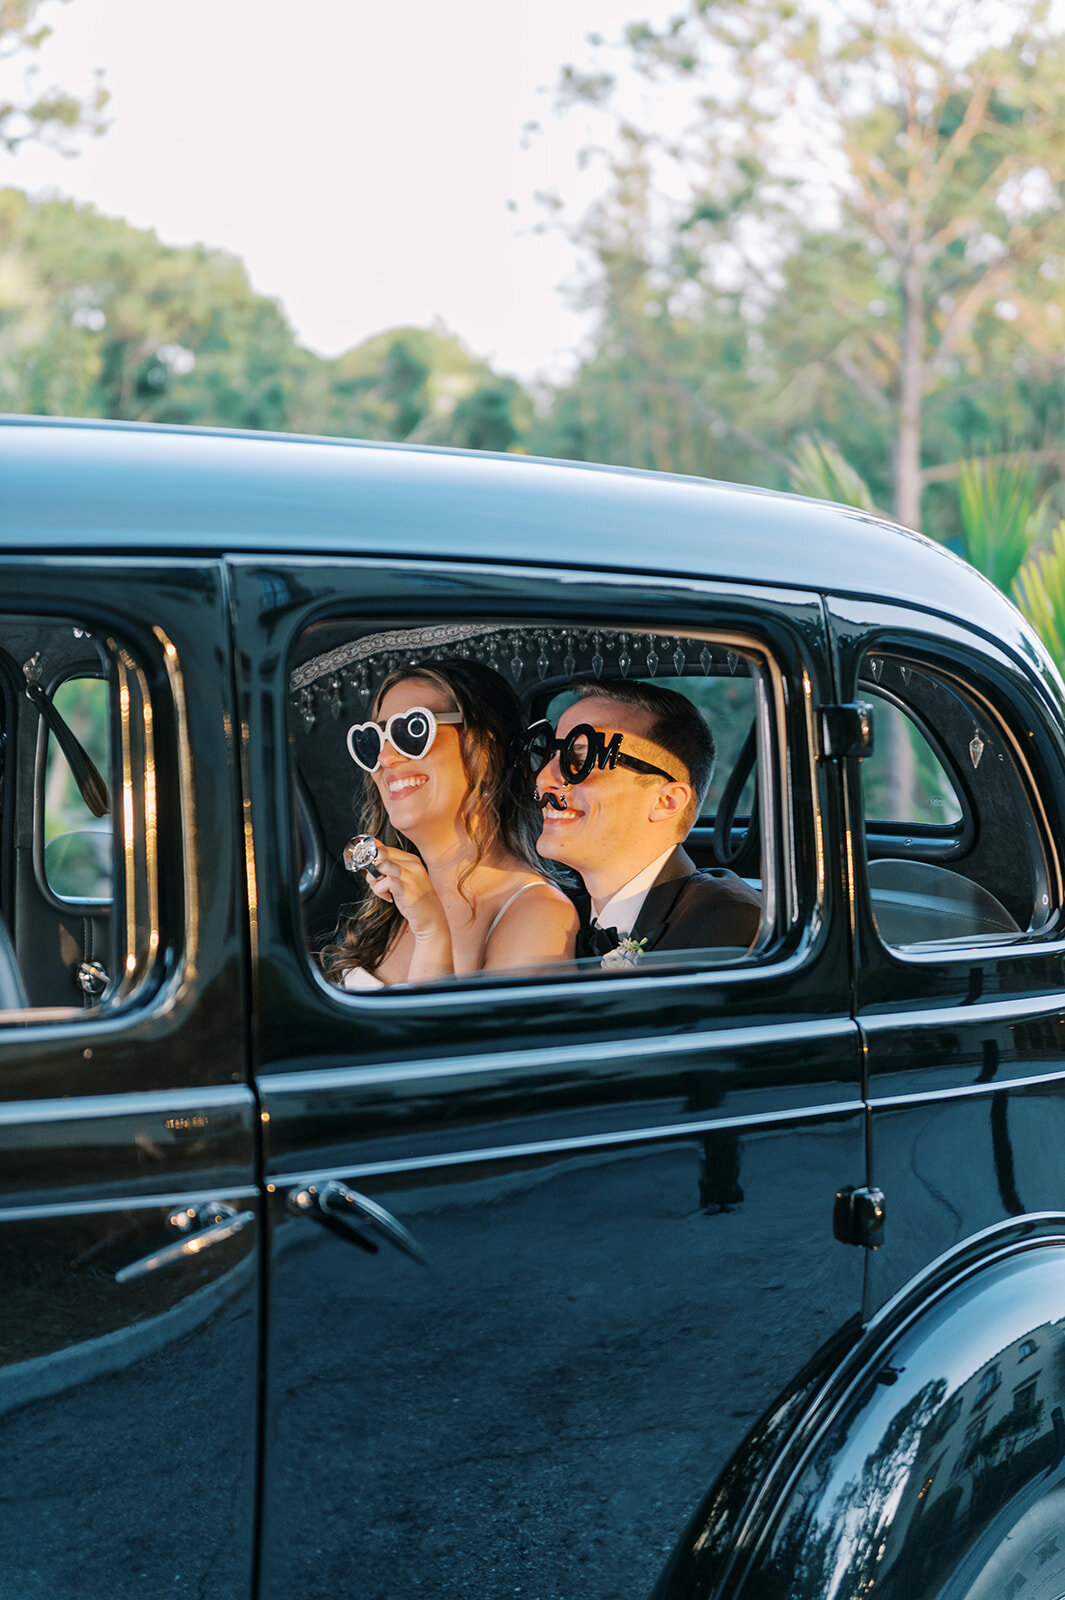 CORNELIA ZAISS PHOTOGRAPHY COURTNEY + ANDREW WEDDING 0970_websize